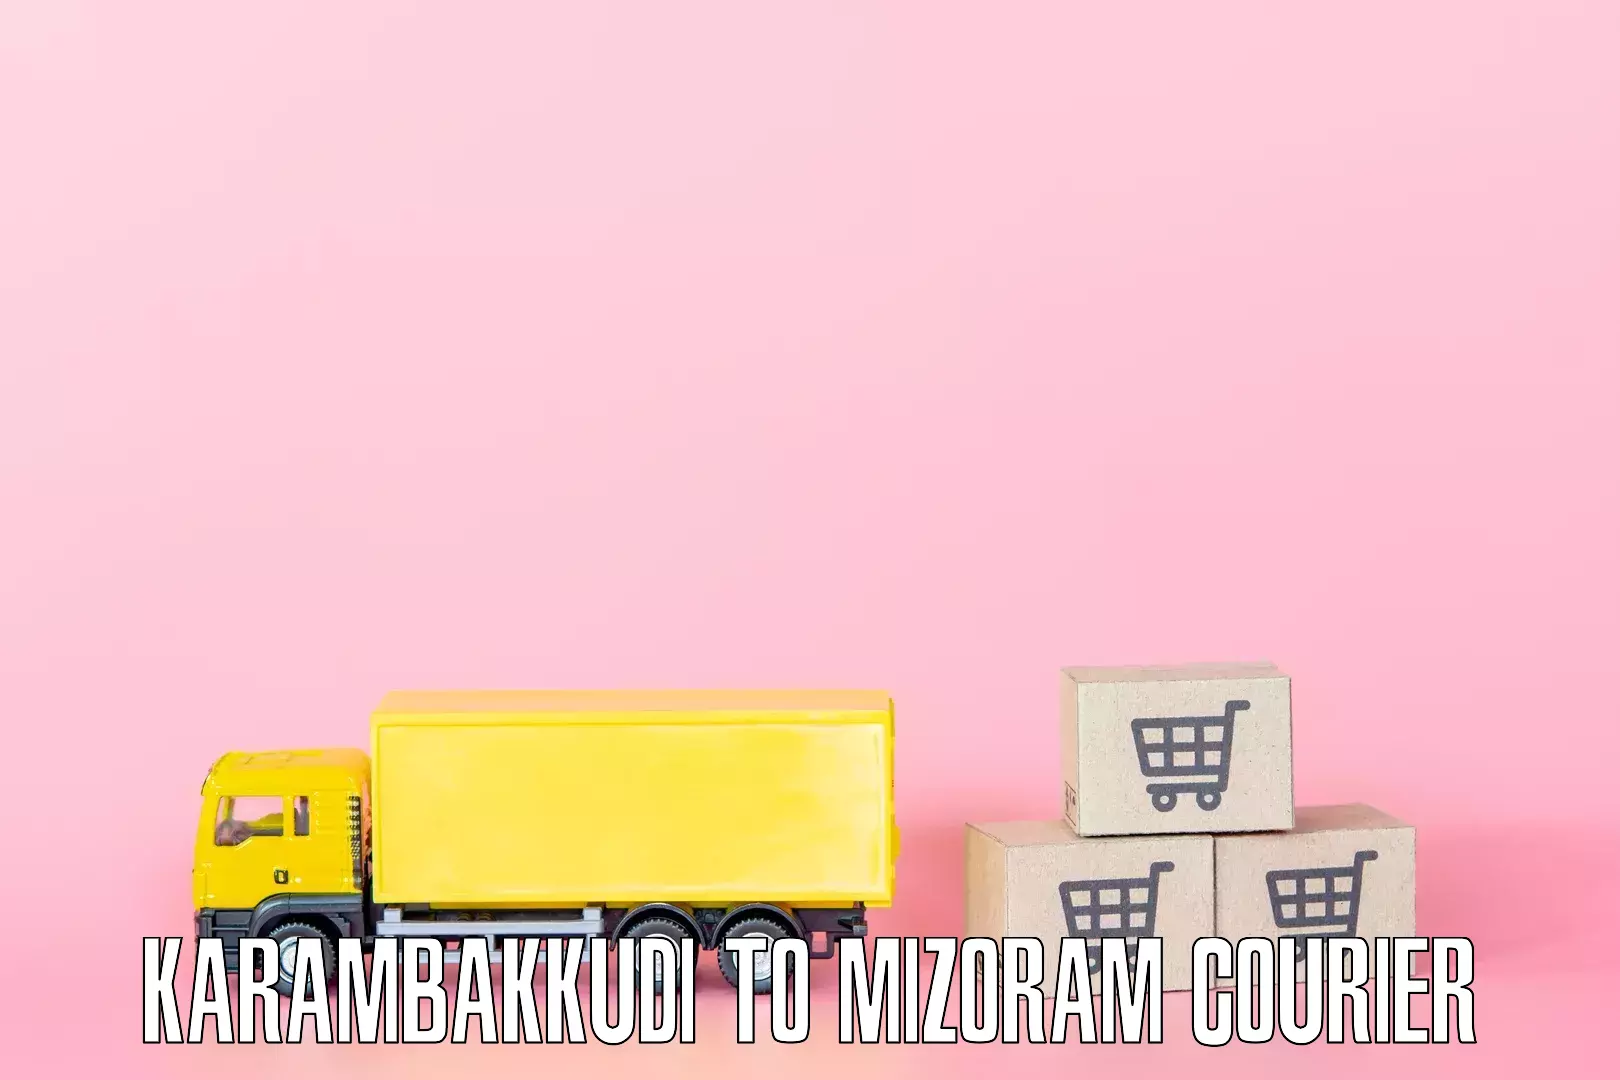 Comprehensive goods transport Karambakkudi to Aizawl